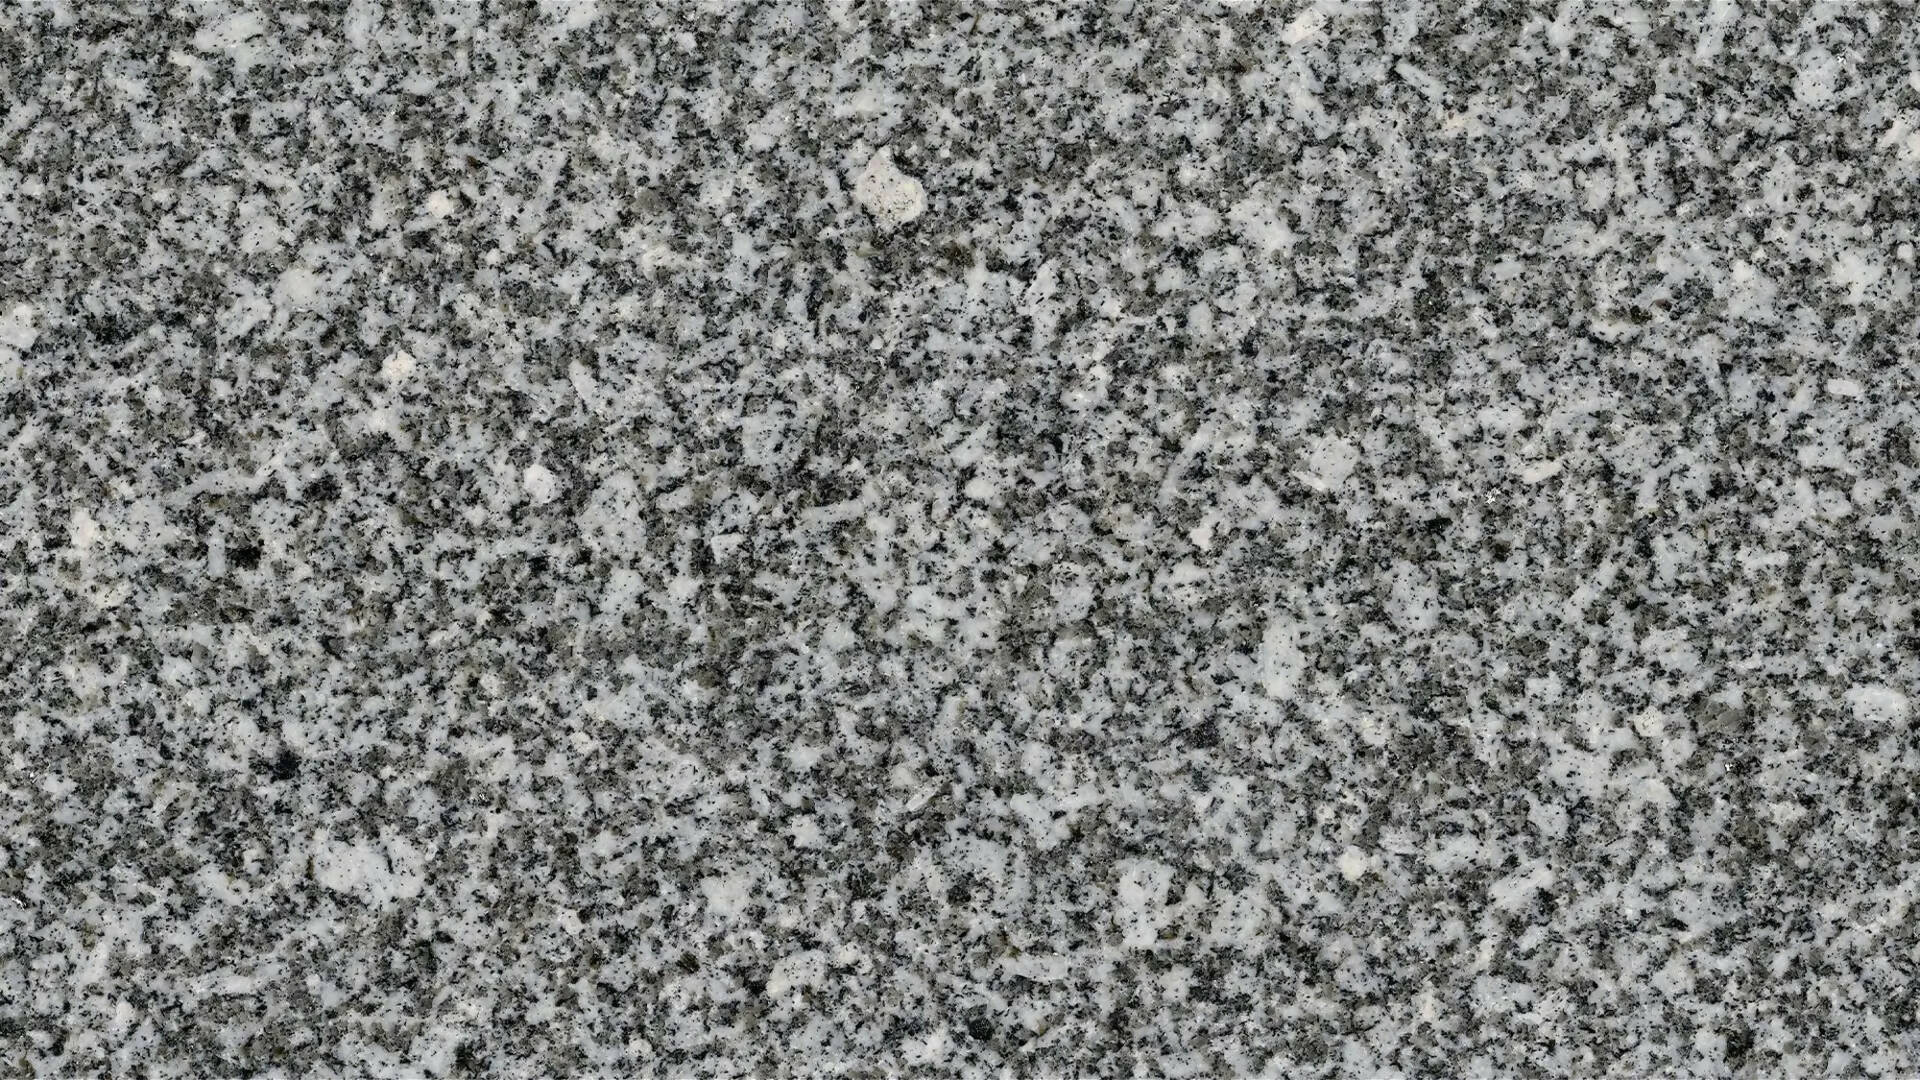 BLANC PERLE GRANITE,Granite,Brachot,www.work-tops.com